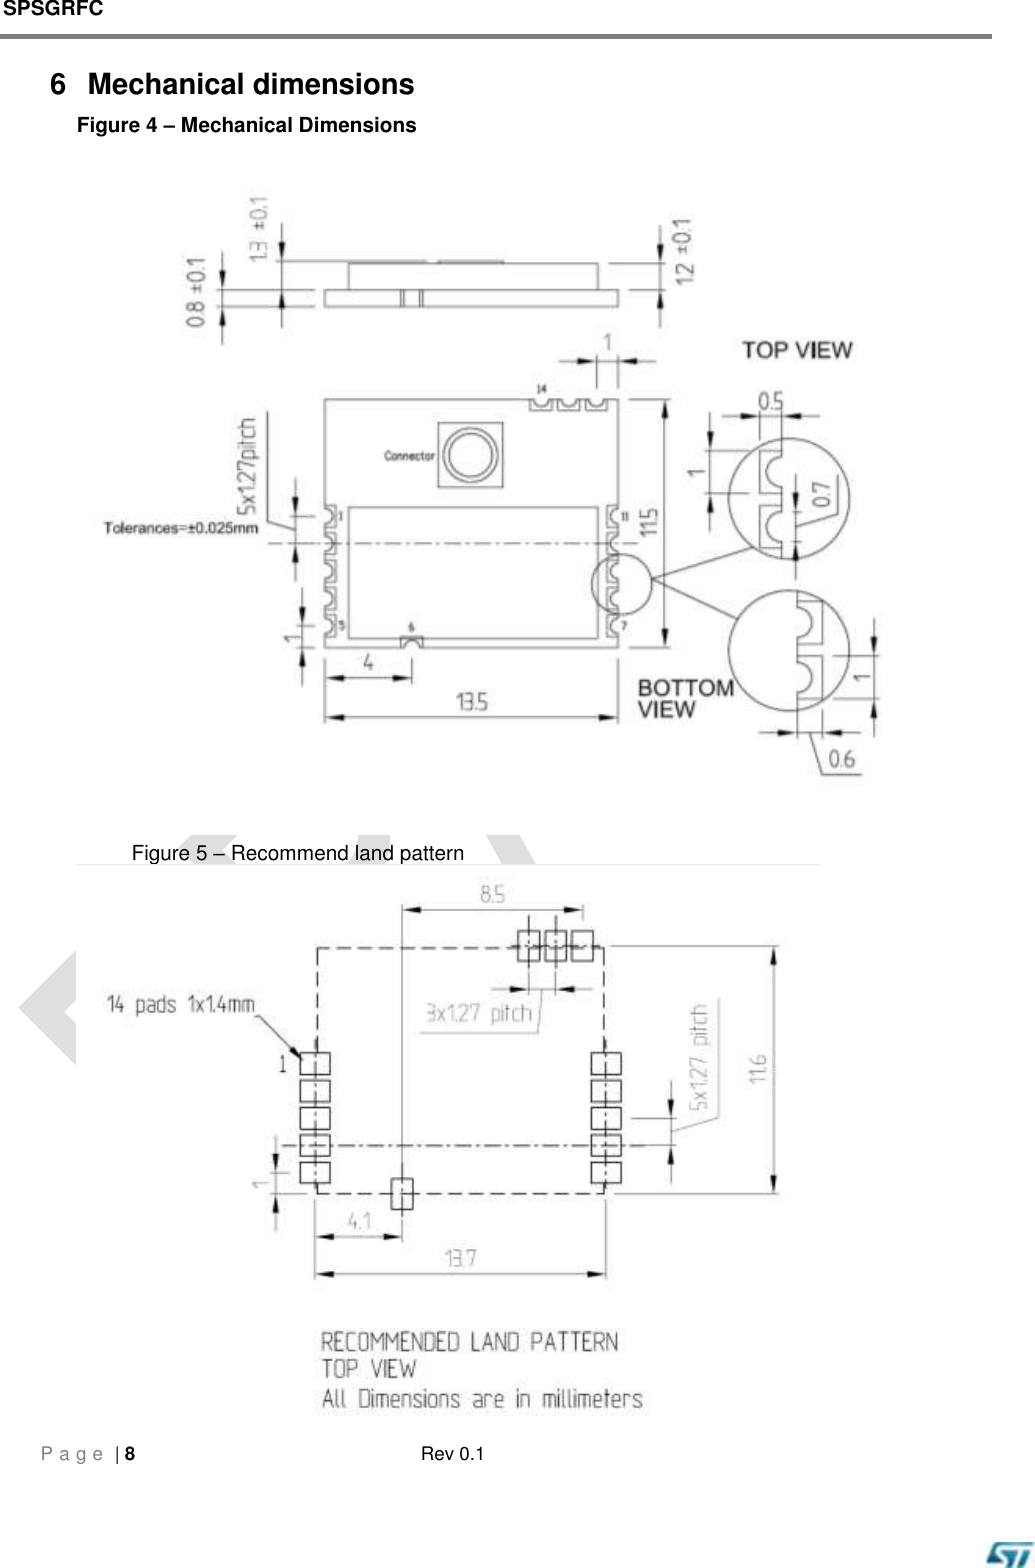 SPSGRFC    P a g e  | 8  Rev 0.1   6  Mechanical dimensions Figure 4 – Mechanical Dimensions                                                                                                        Figure 5 – Recommend land pattern  